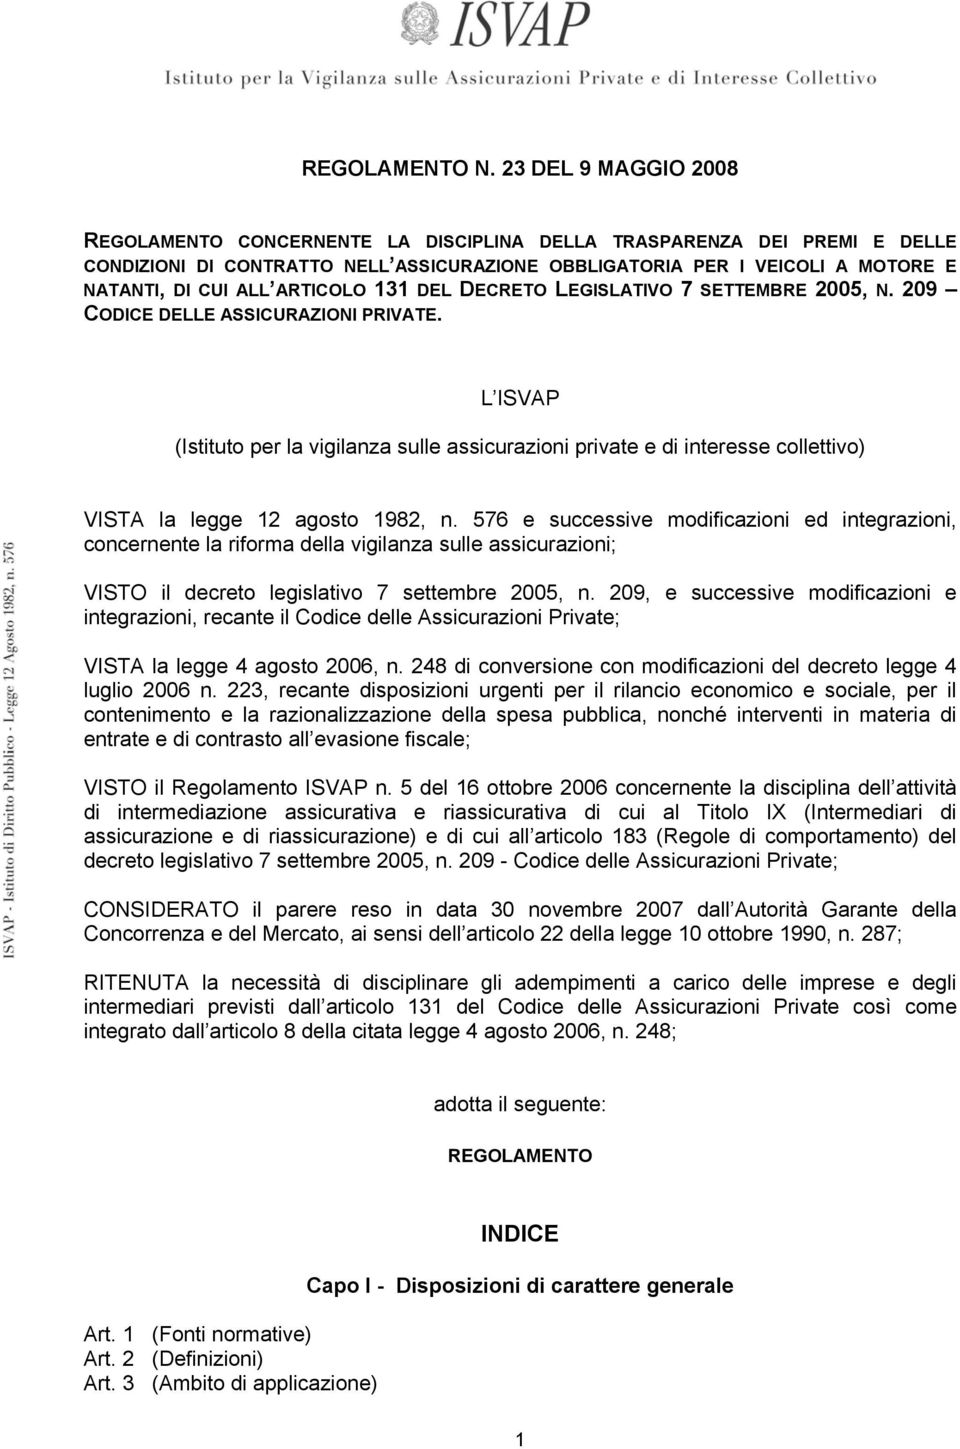 ARTICOLO 131 DEL DECRETO LEGISLATIVO 7 SETTEMBRE 2005, N. 209 CODICE DELLE ASSICURAZIONI PRIVATE.